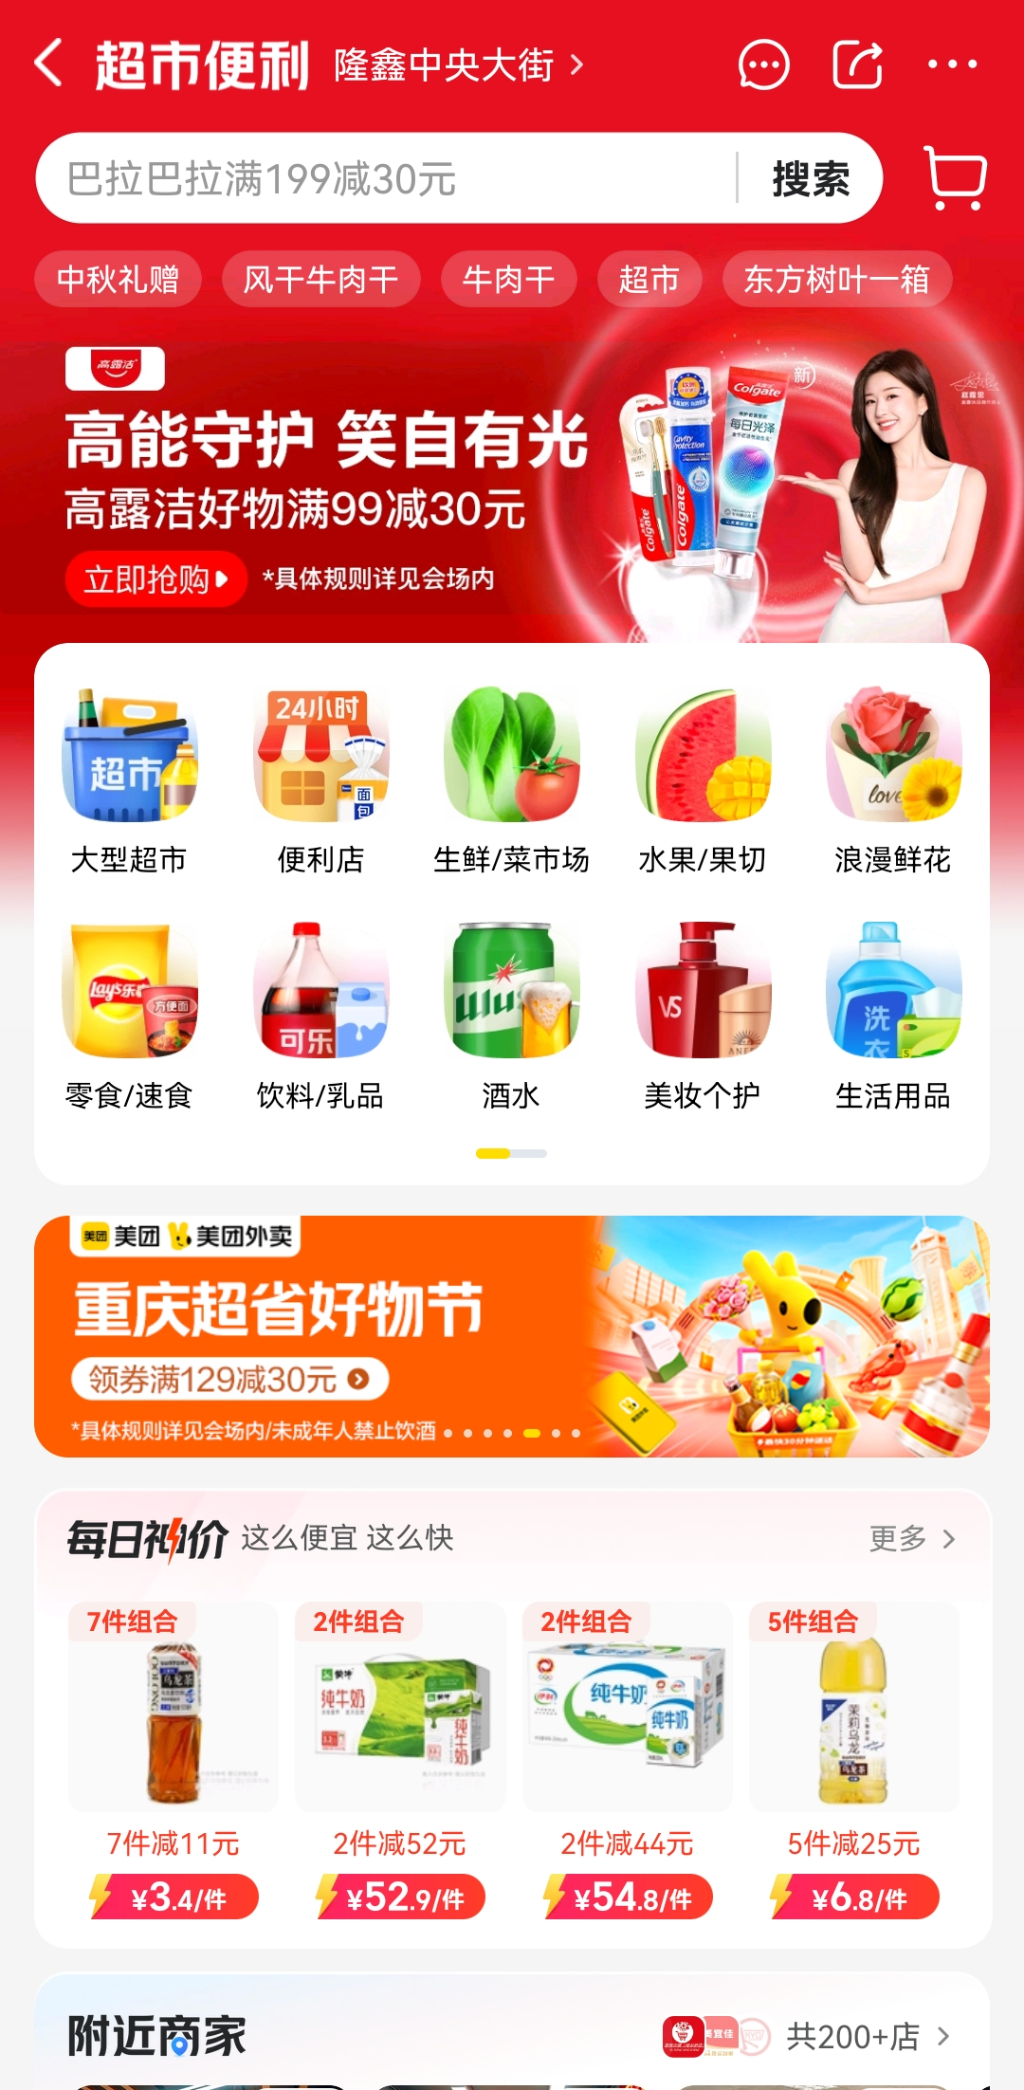 助力居民消费 美团外卖在重庆发放千万元超市百货消费券2